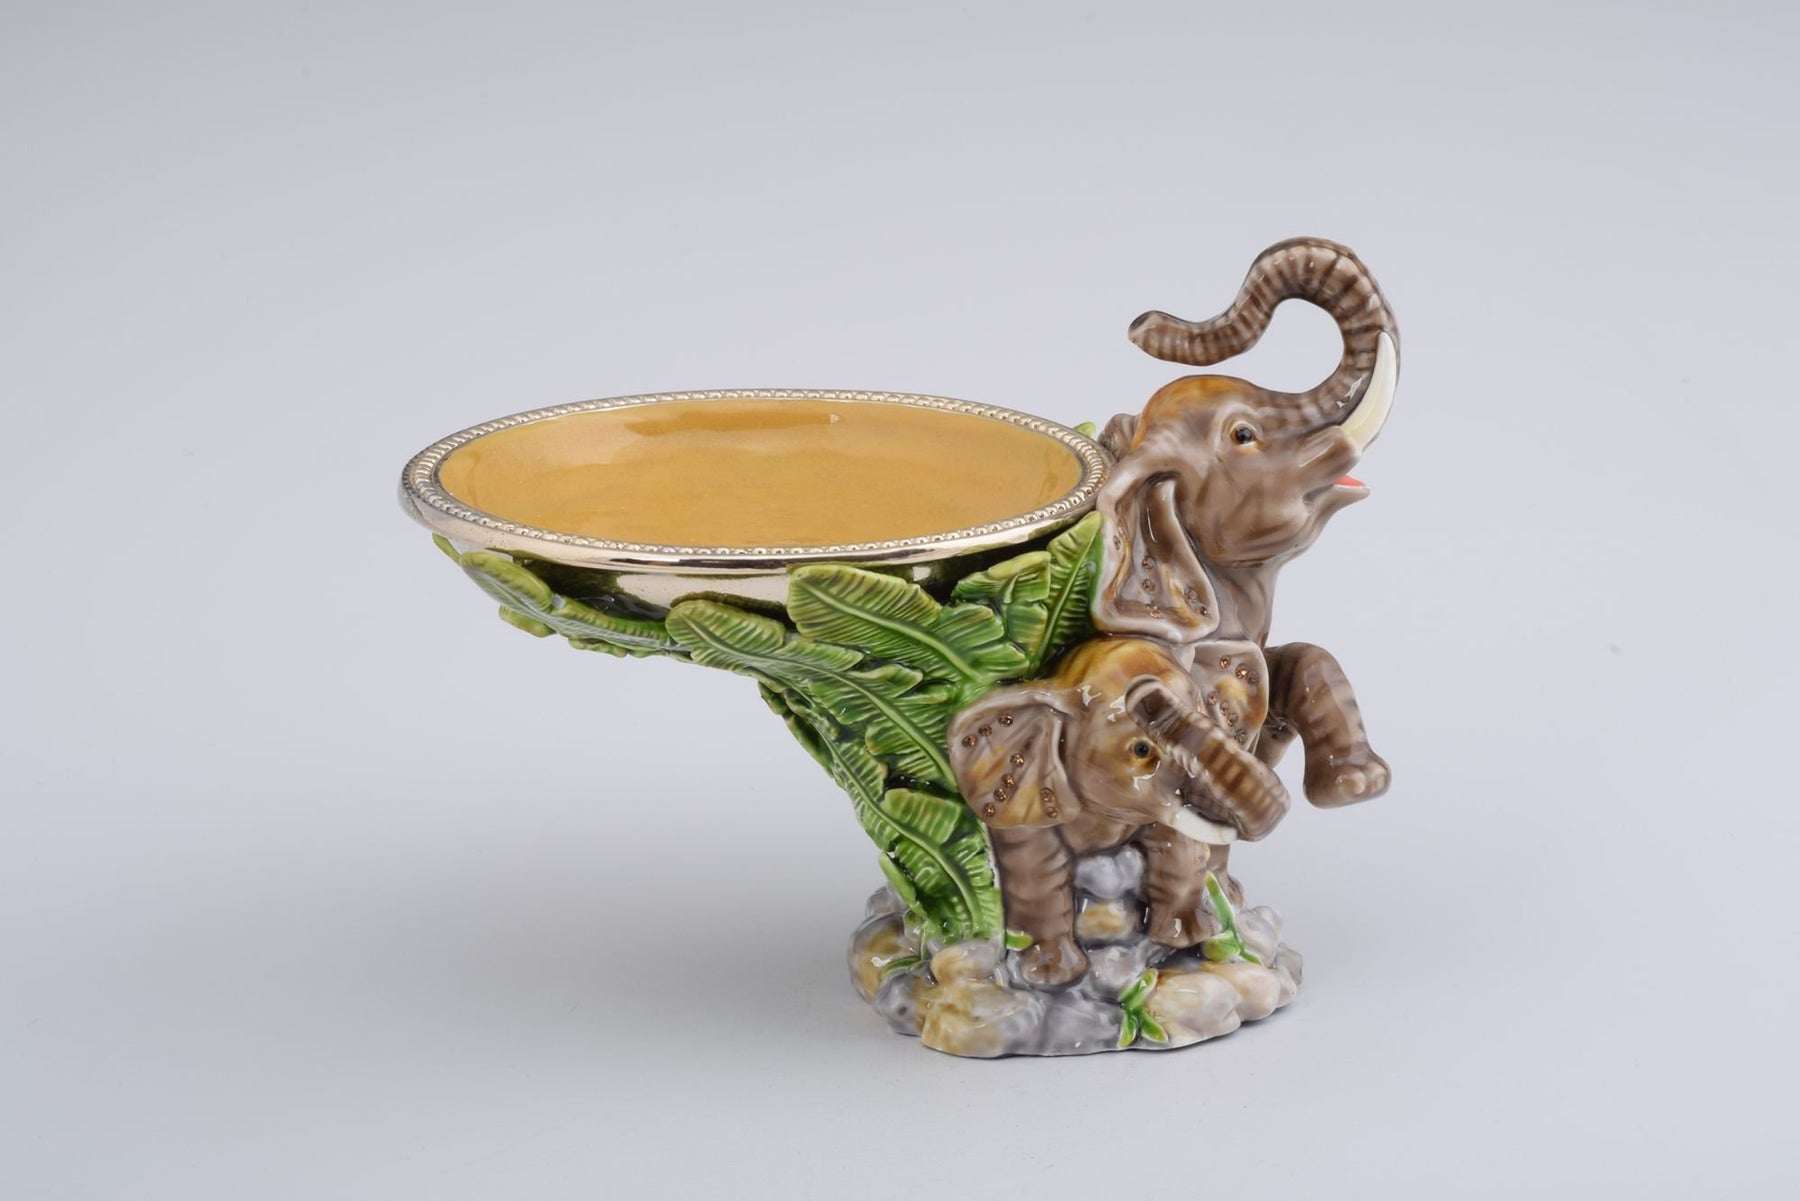 Keren Kopal Elephant Holding a Plate  154.25